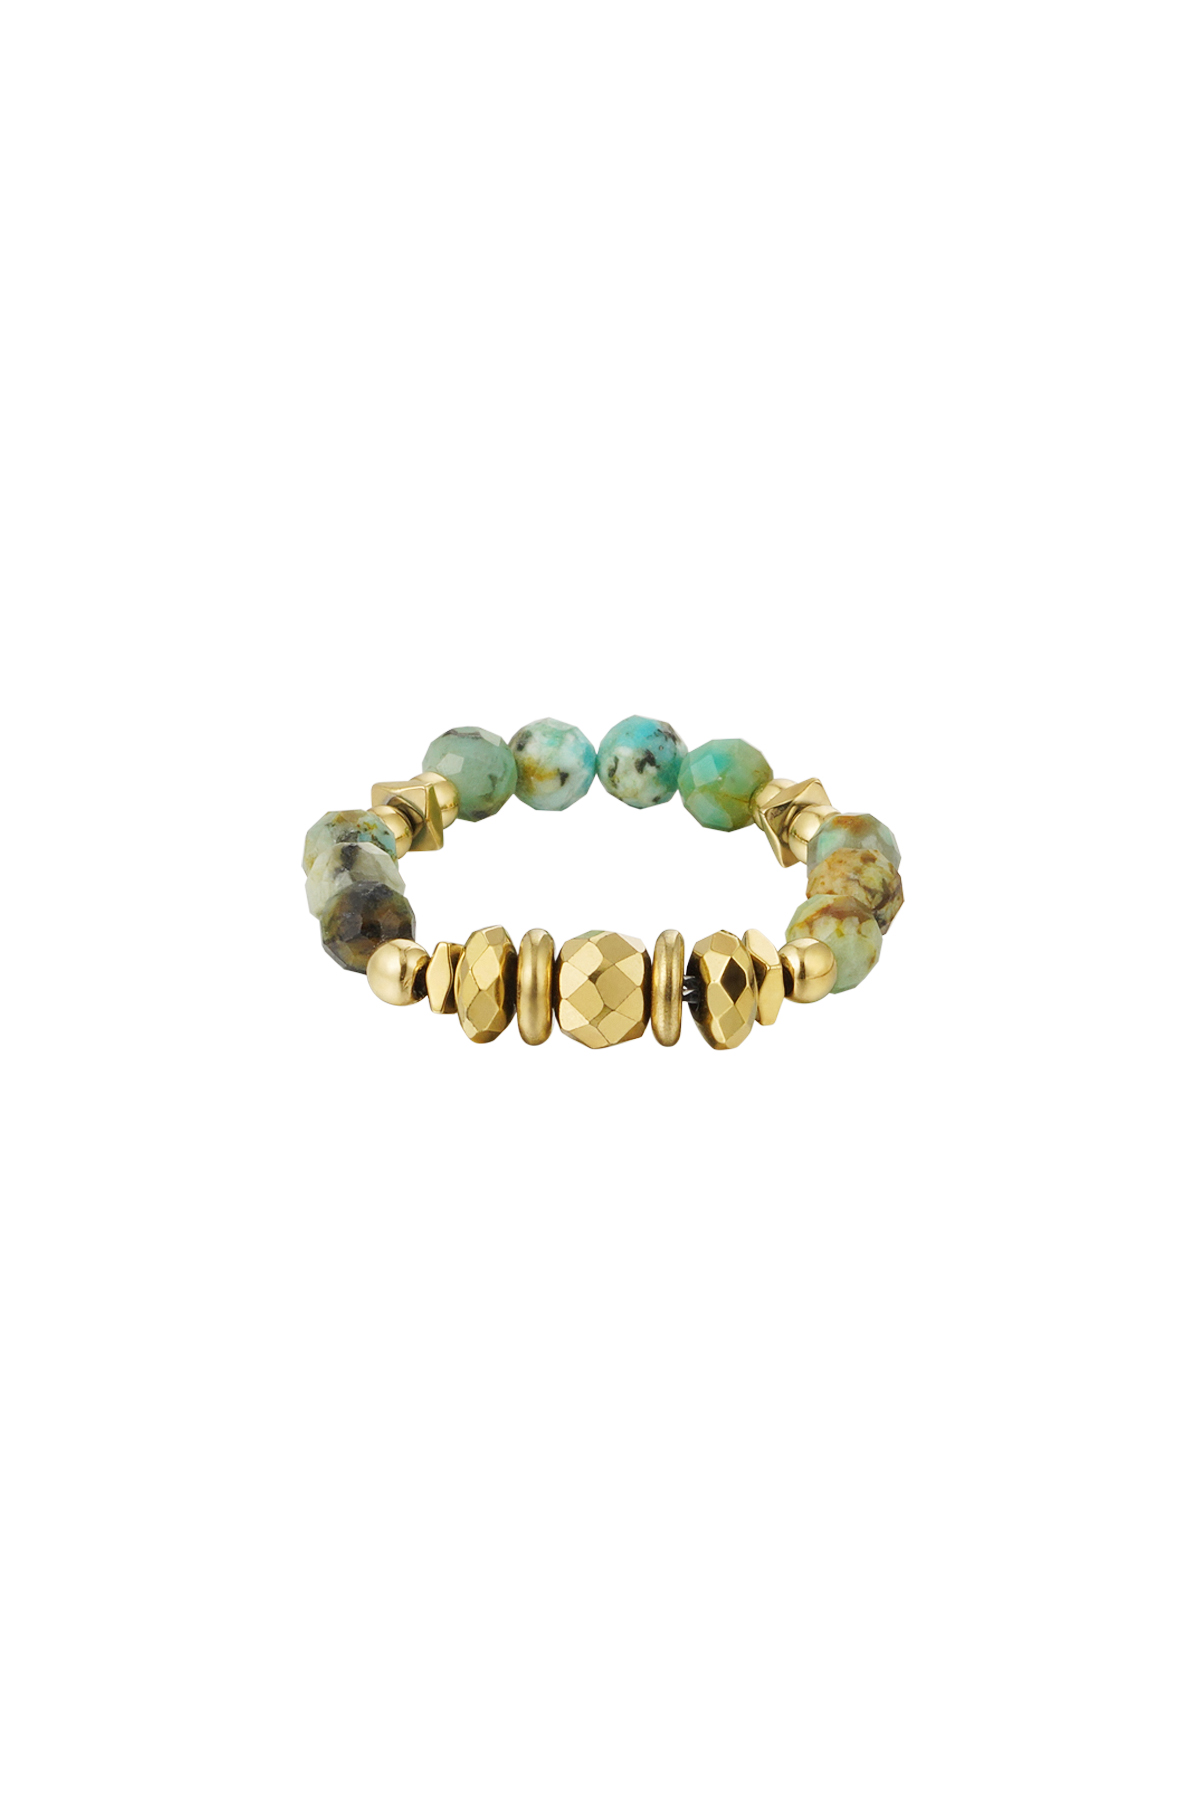 Yüzük taşları - Doğal taş koleksiyonu - altın/yeşil Green & Gold Stone One size 